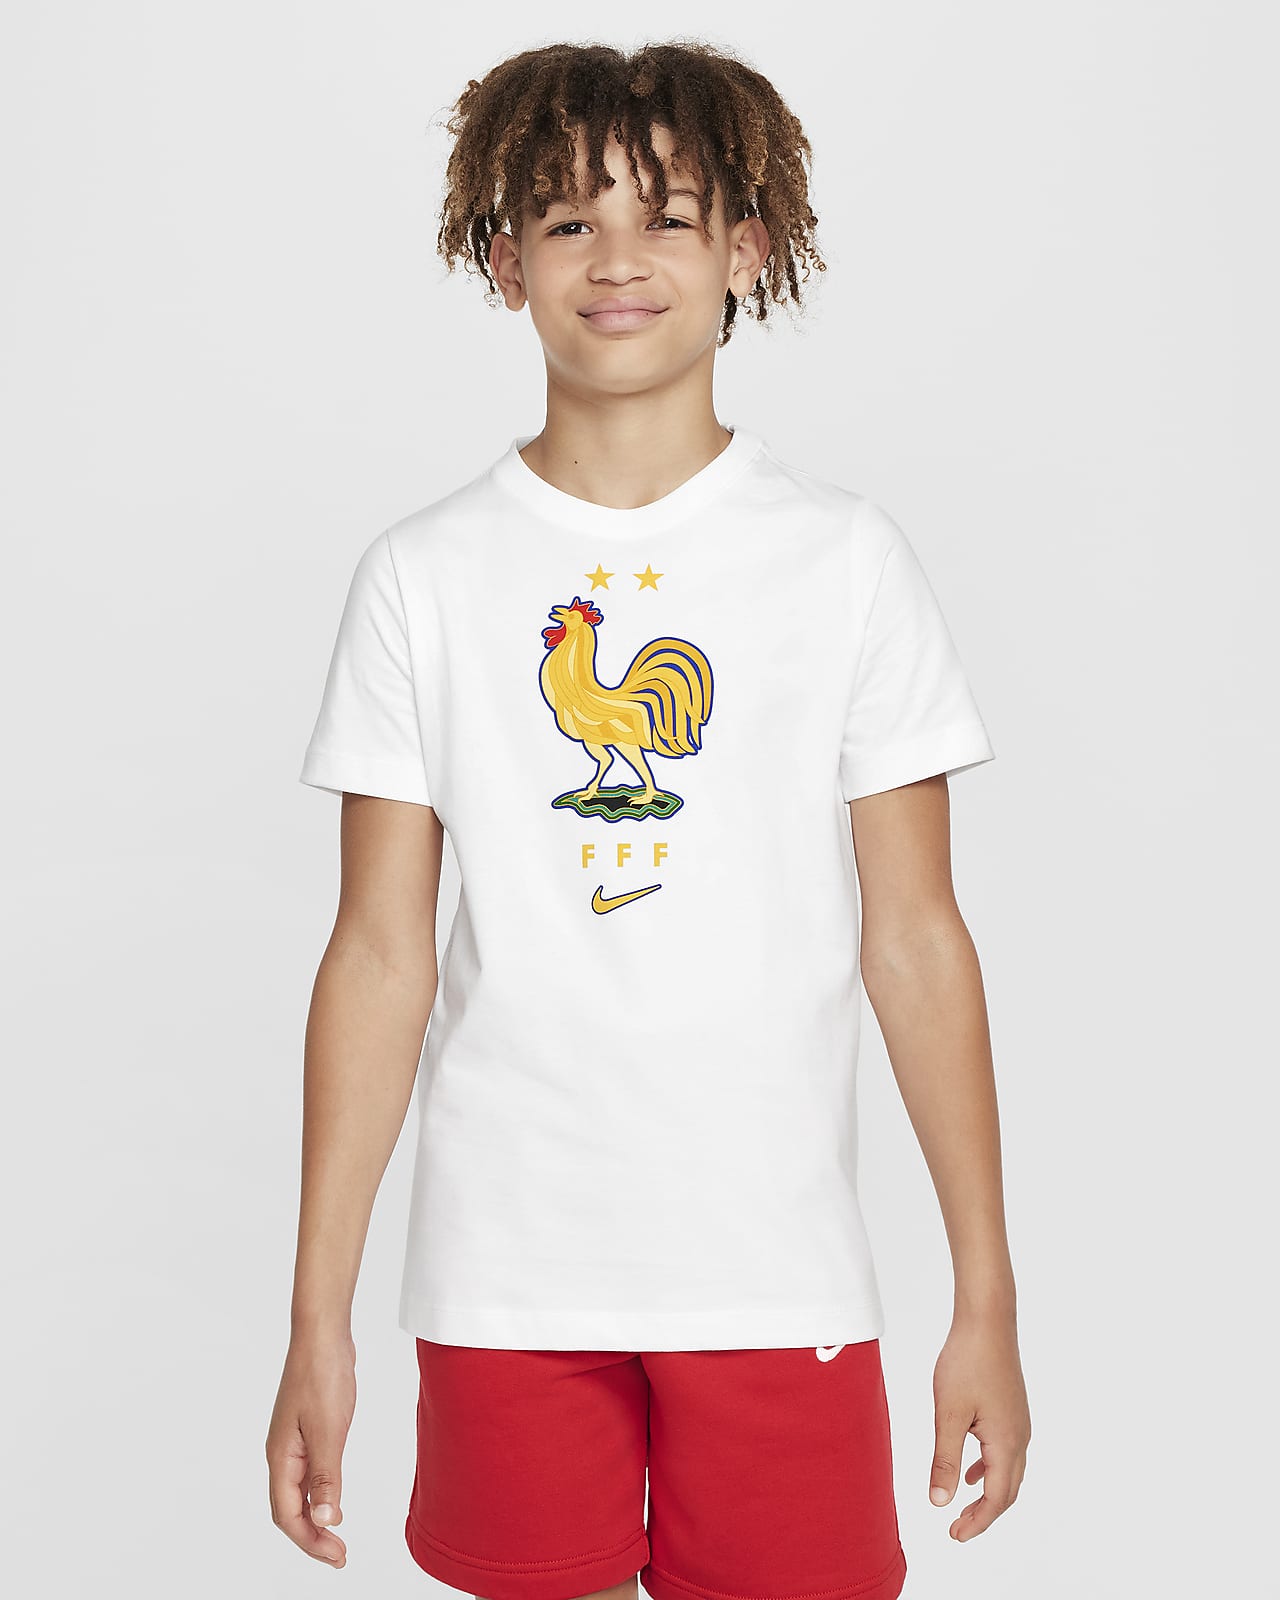 FFF Nike fotball-T-skjorte til store barn